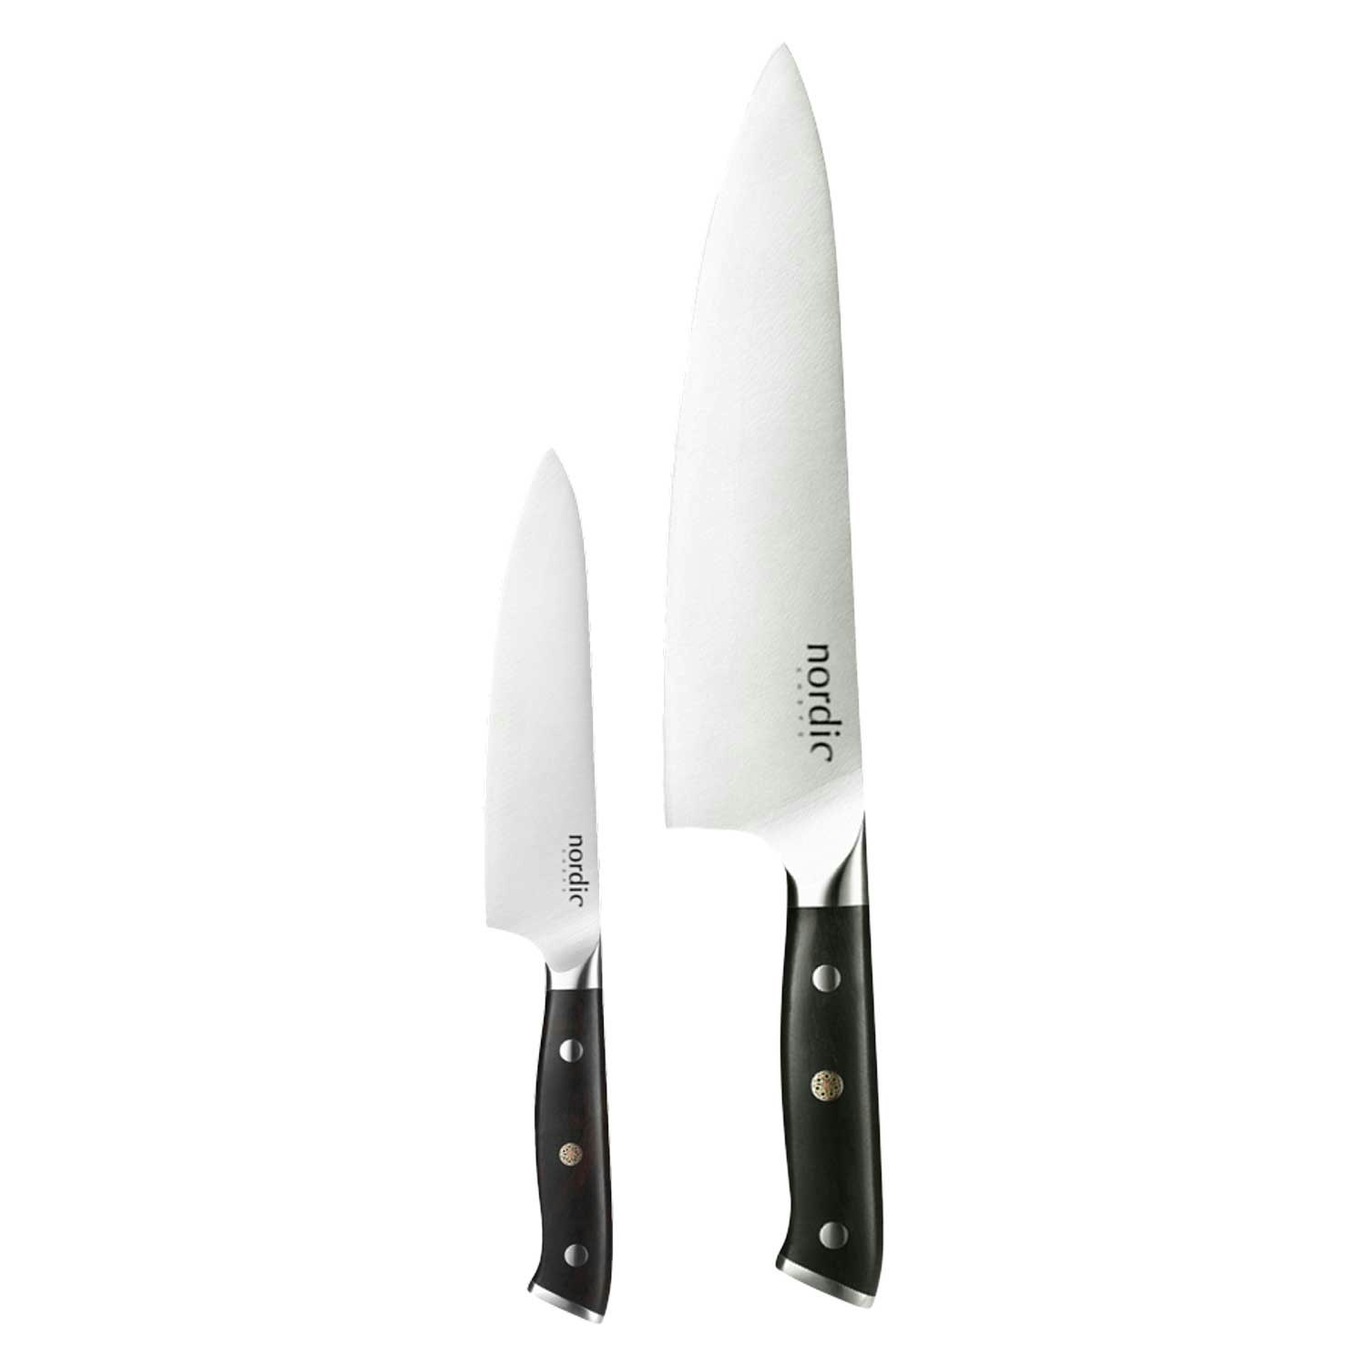 Nordic Knife Sets, 2-pack